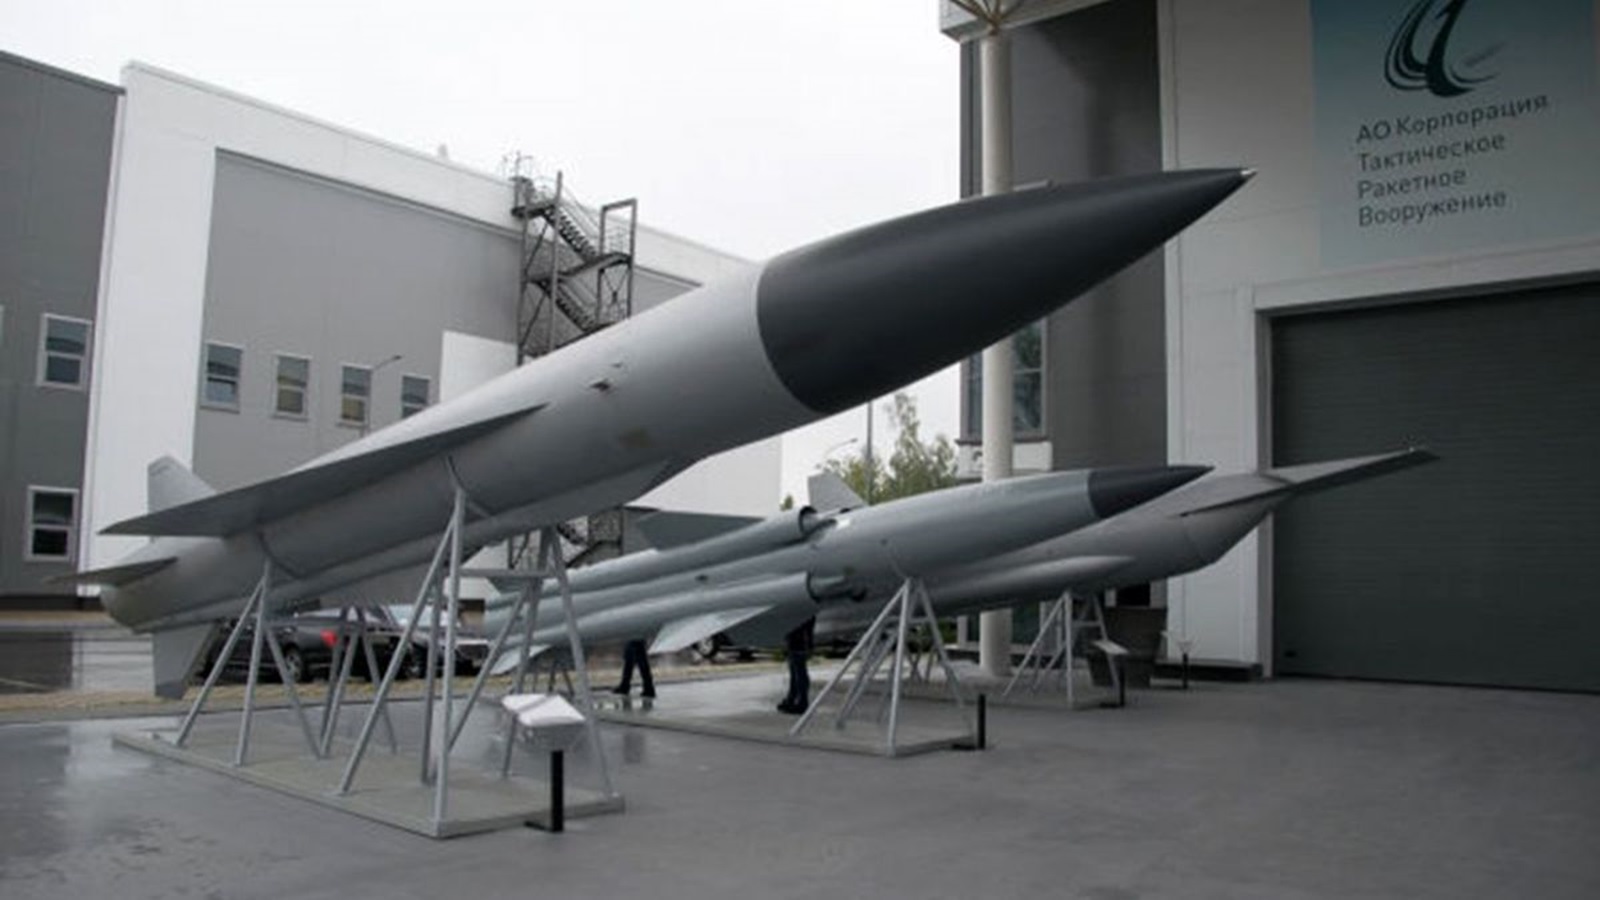 Новейшая высокоточная гиперзвуковая ракета. Гиперзвуковая ракета x51. Ракета 3м-80 Москит. Москит противокорабельная ракета. Ракета 3м22 циркон.